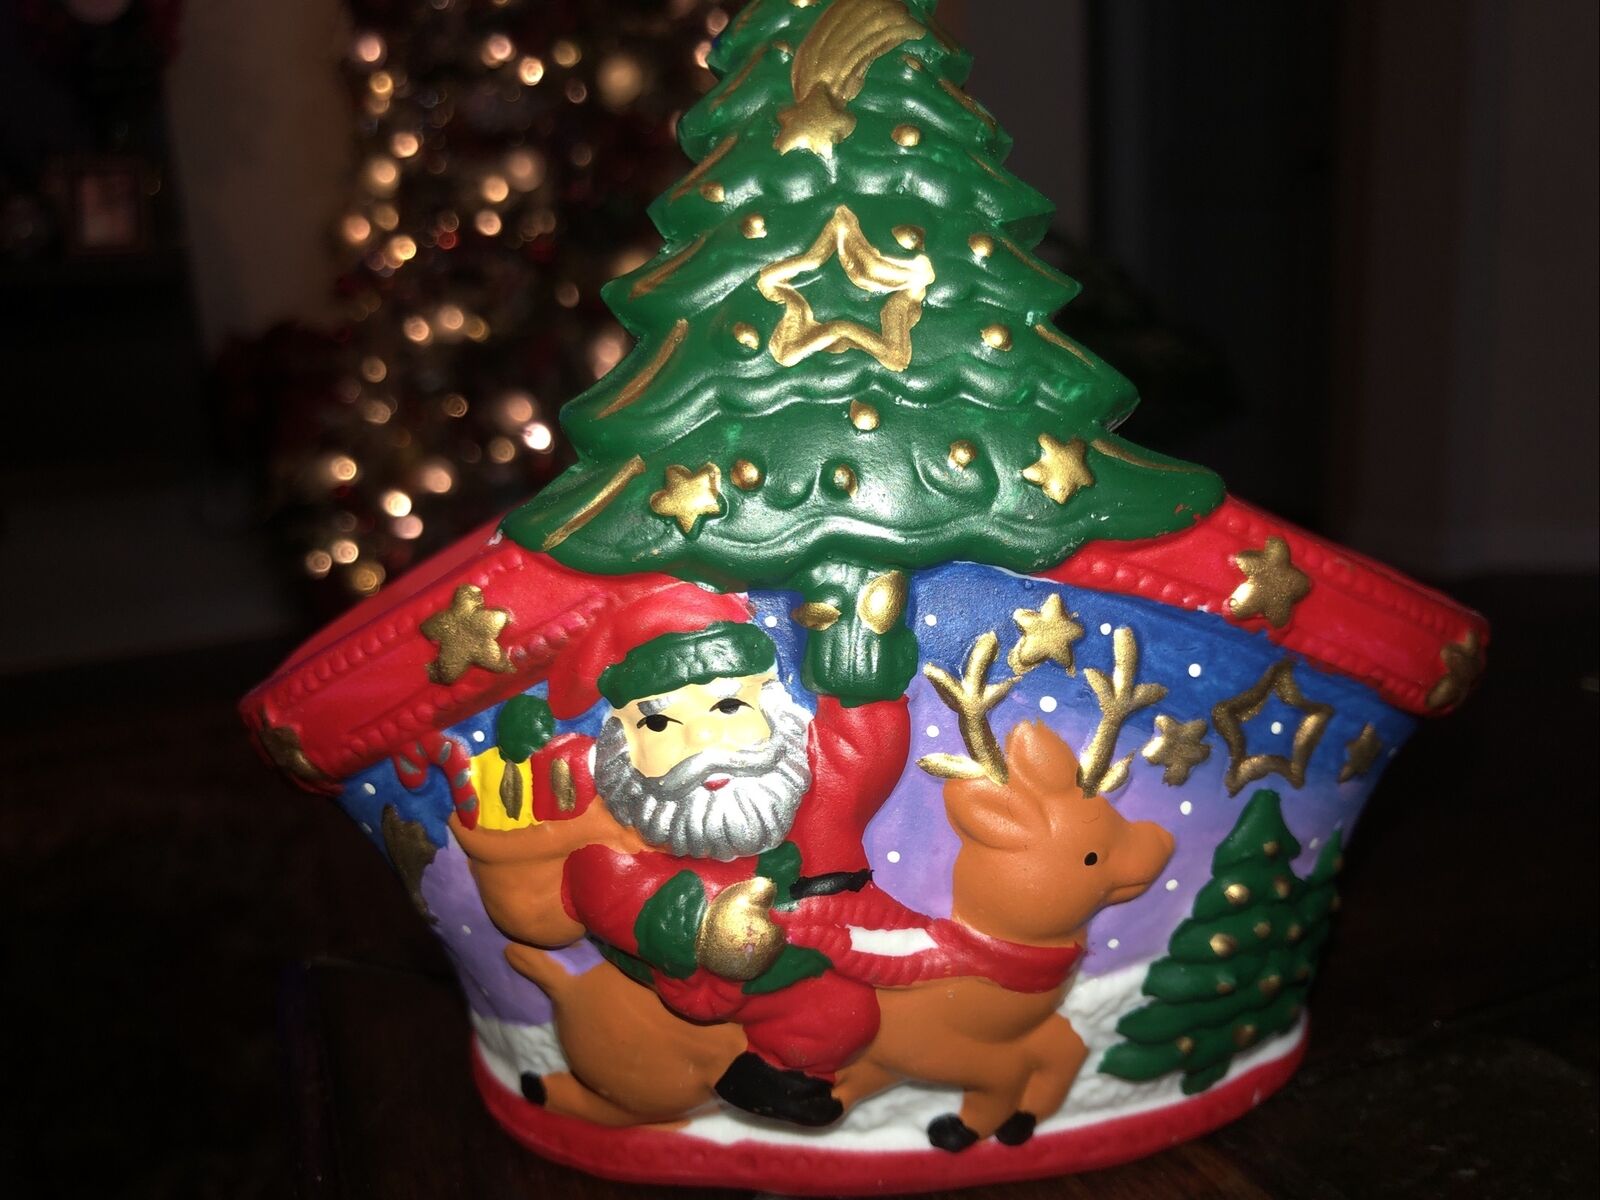 Brinns Hand Painted Santa With Reindeer Colorful Trinket Basket